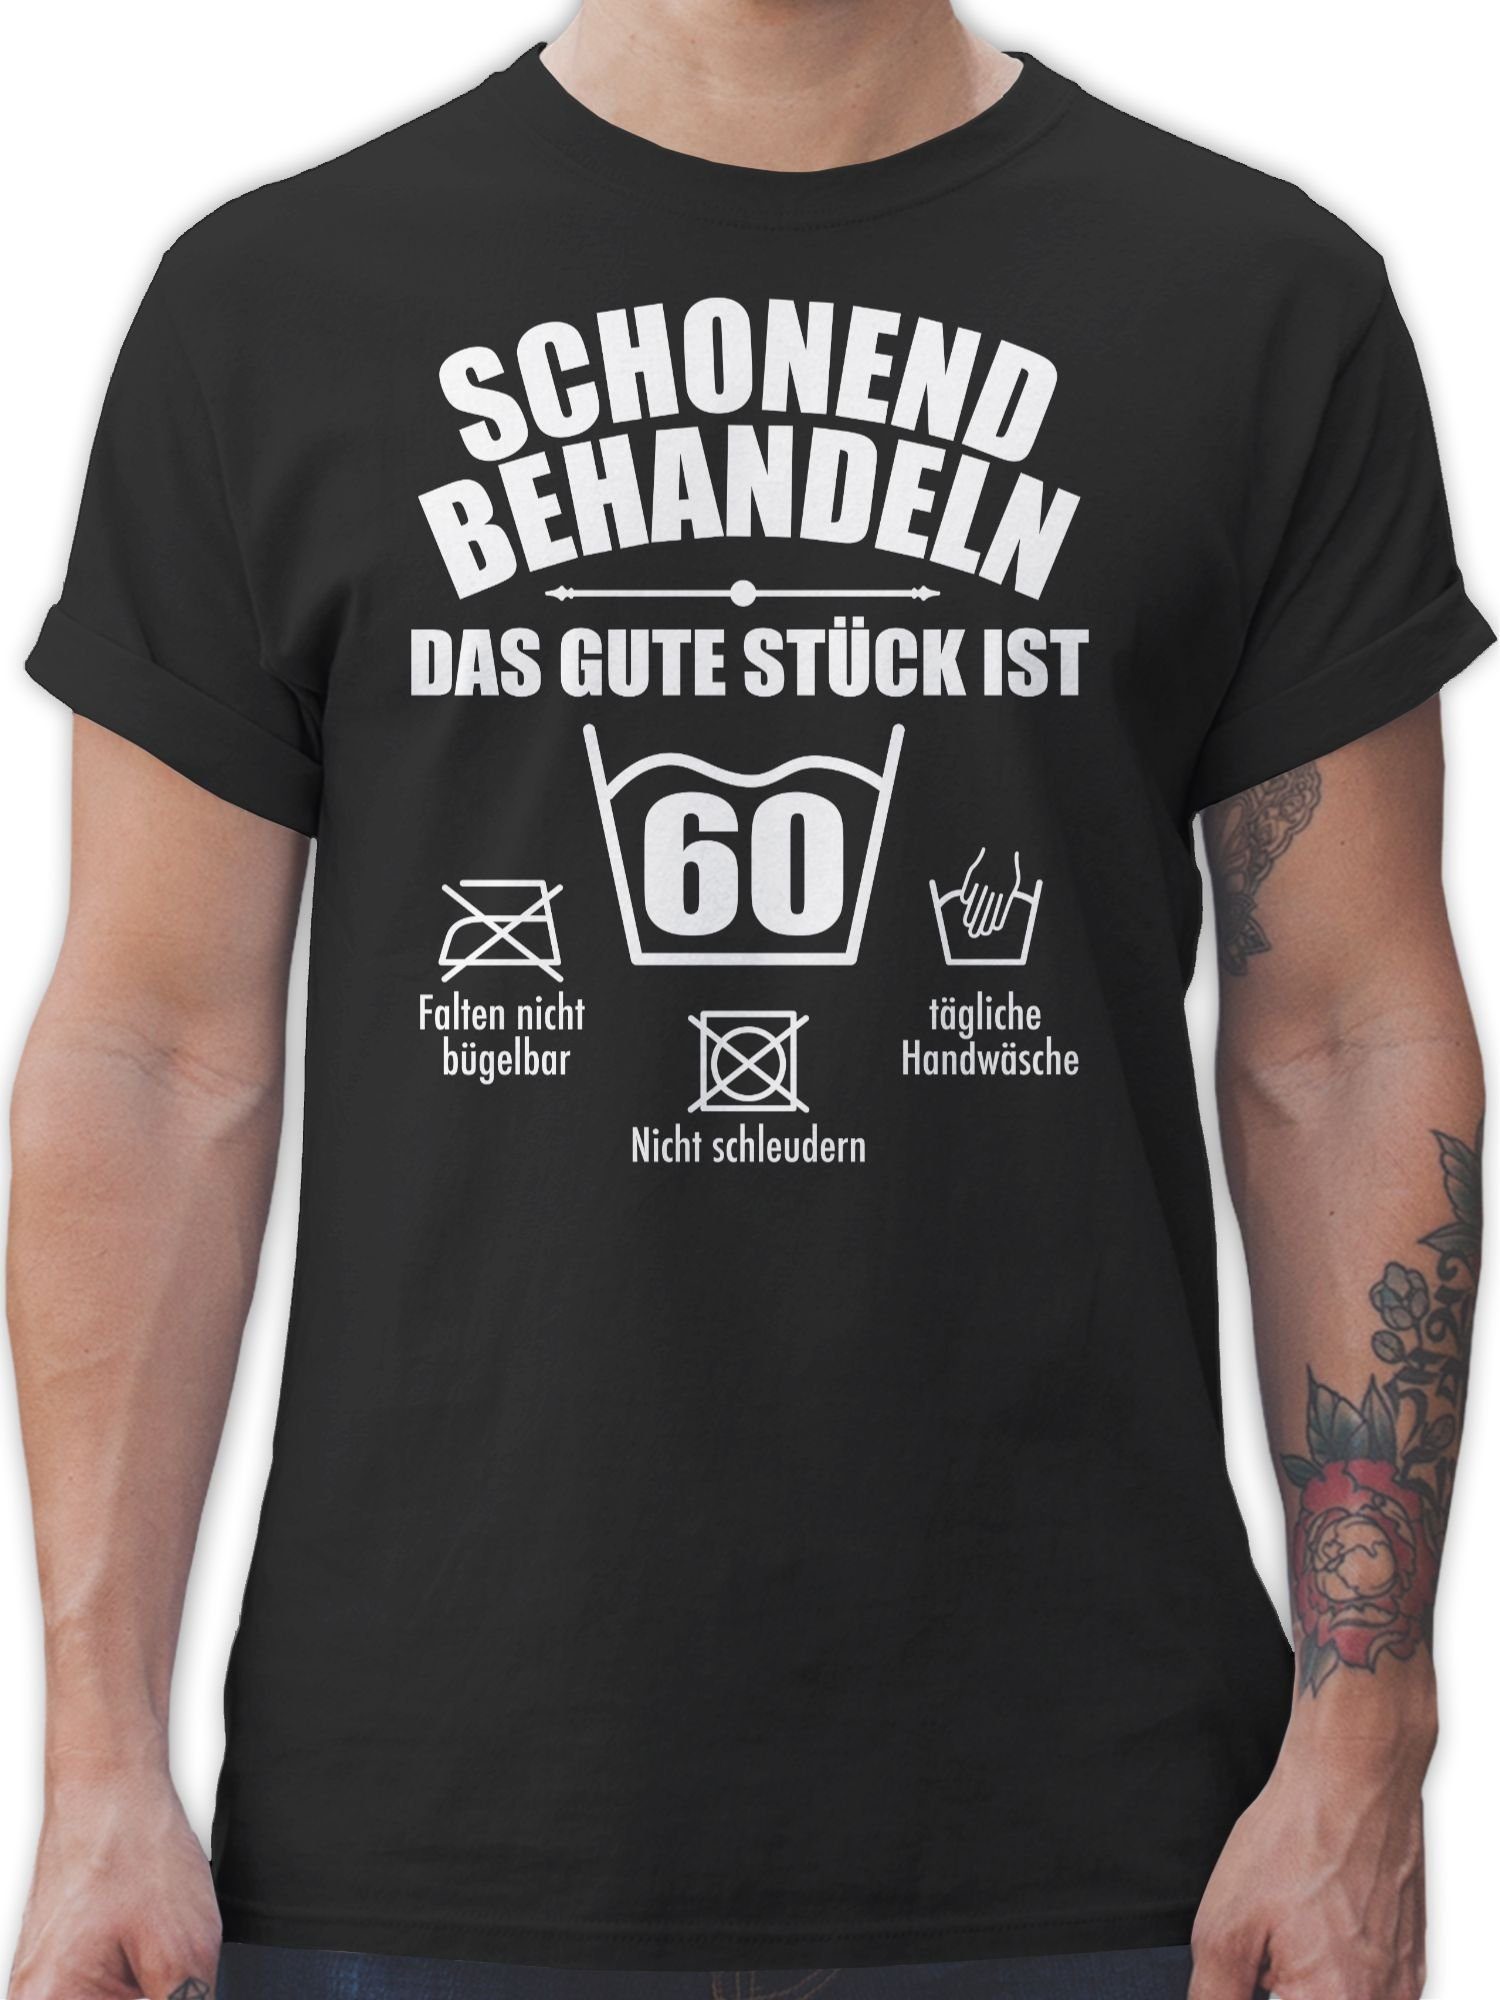 Shirtracer T-Shirt Sechzig behandeln Jahre Geburtstag 01 Schonend 60. Schwarz - 60 